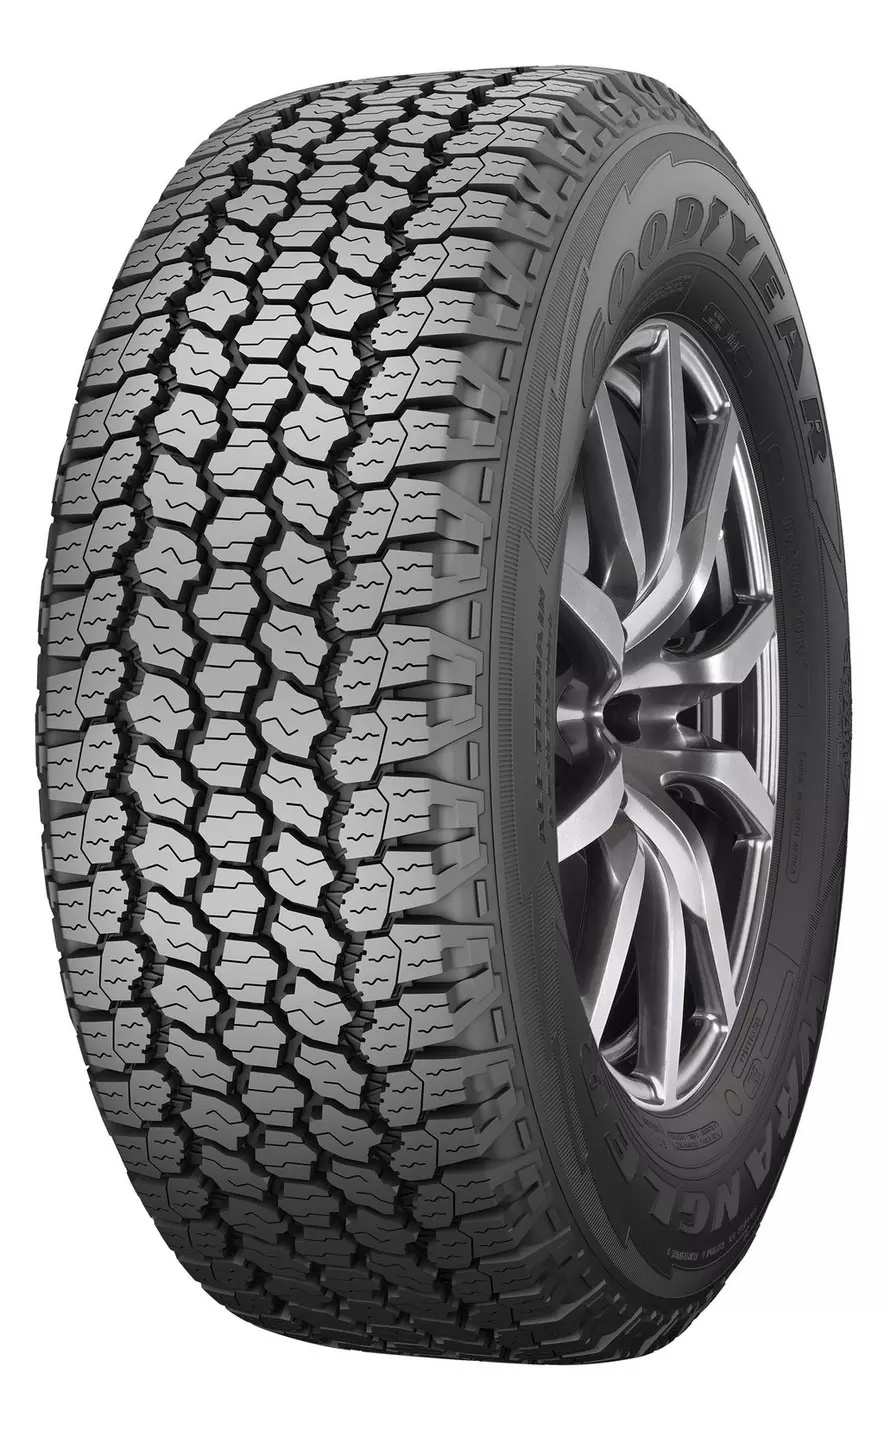 Buy Goodyear Wrangler All-Terrain Adventure Tyres Online